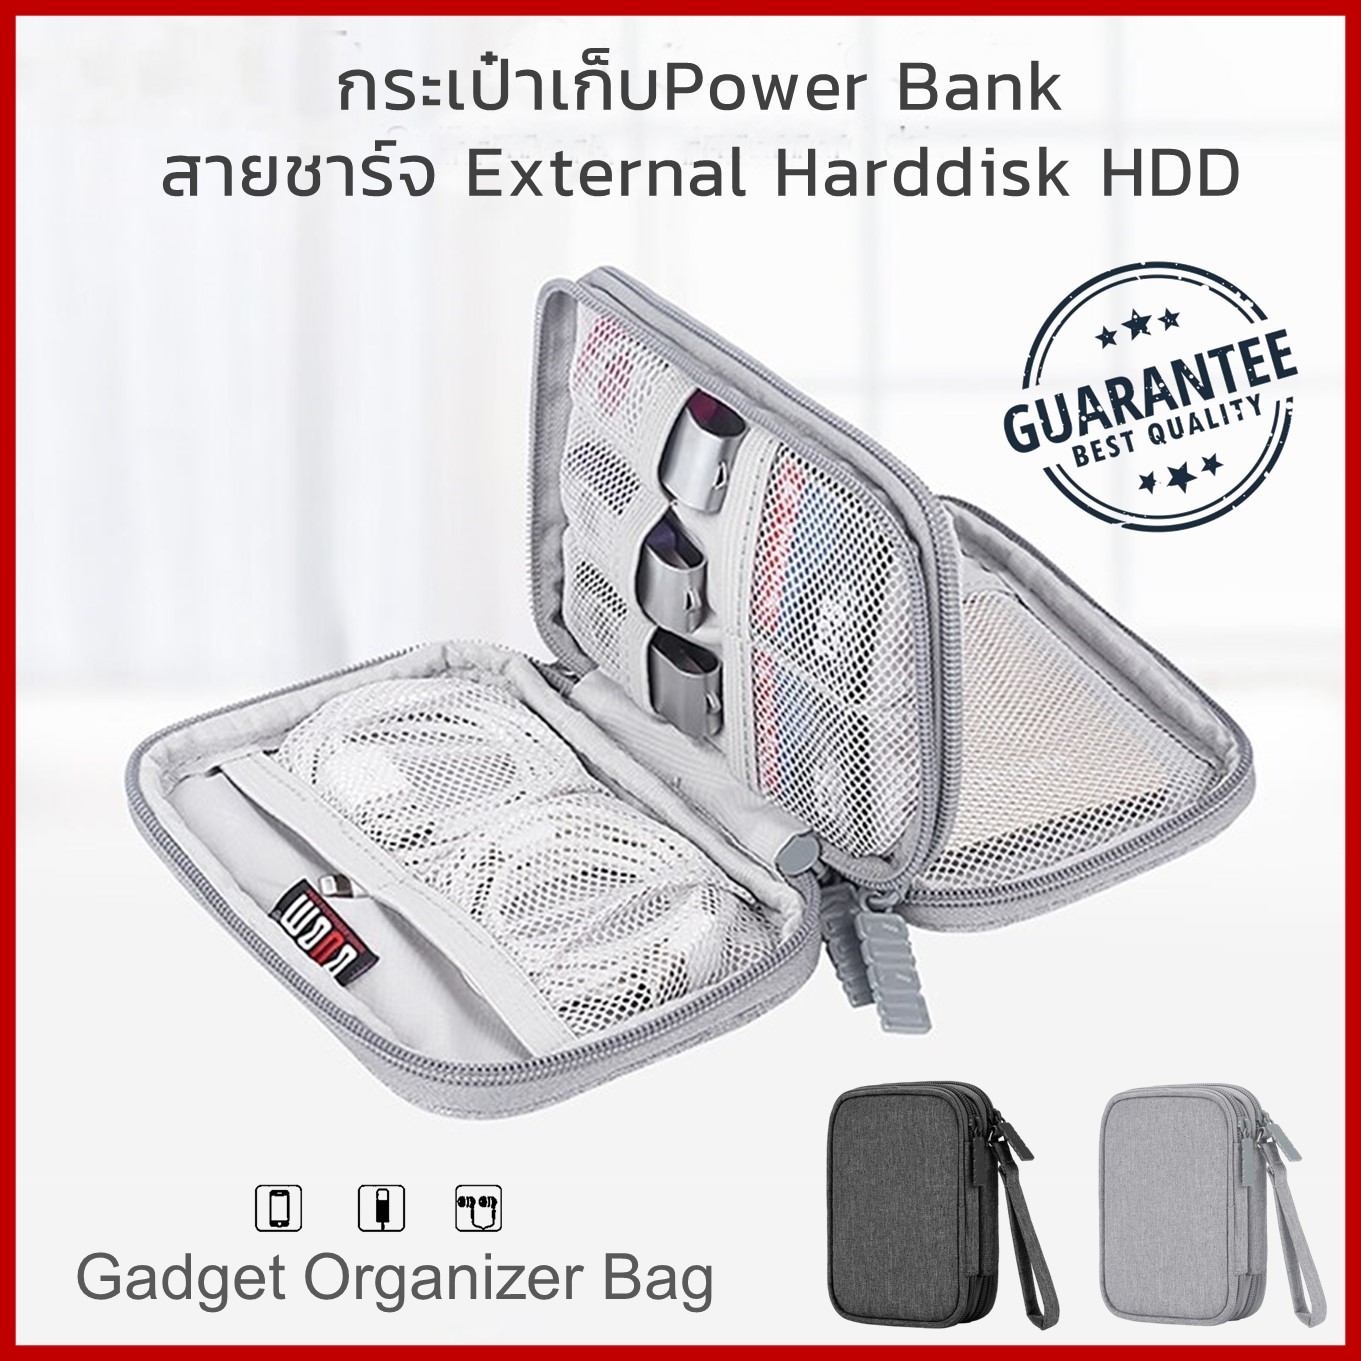 กระเป๋าเก็บแบตสำรอง สายชาร์จ USB SD การ์ด External Harddisk HDD หูฟัง เคสแบตสำรอง กระเป๋าจัดระเบียบเดินทาง Portable Case for Power bank Gadget Organizer Bag